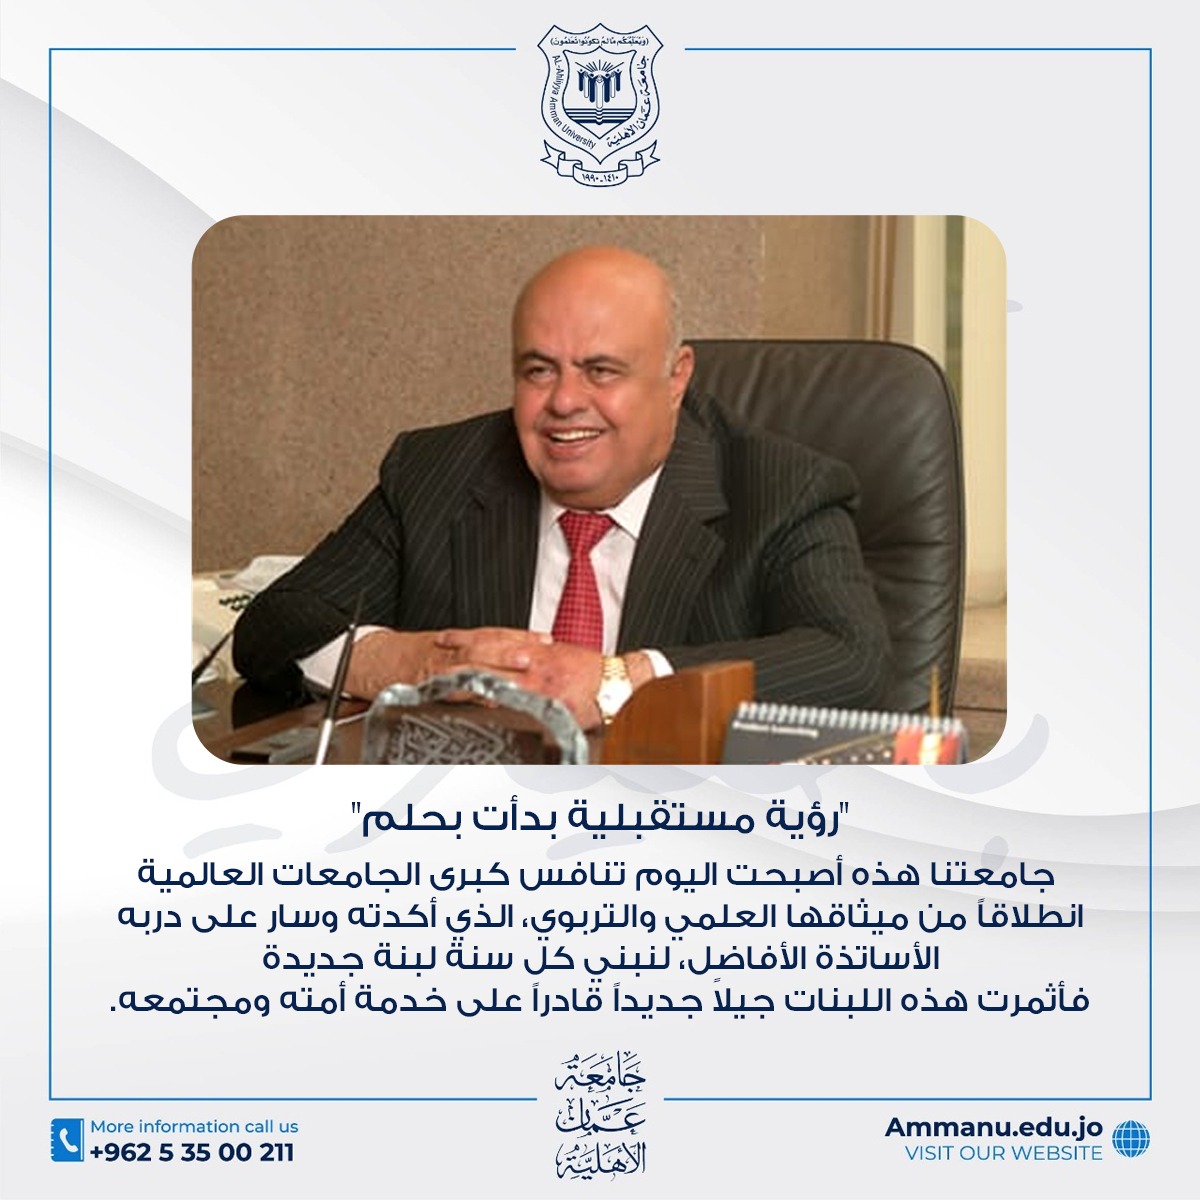 الذكرى السنوية السادسة لرحيل مؤسس جامعة عمان الأهلية المرحوم د. أحمد الحوراني